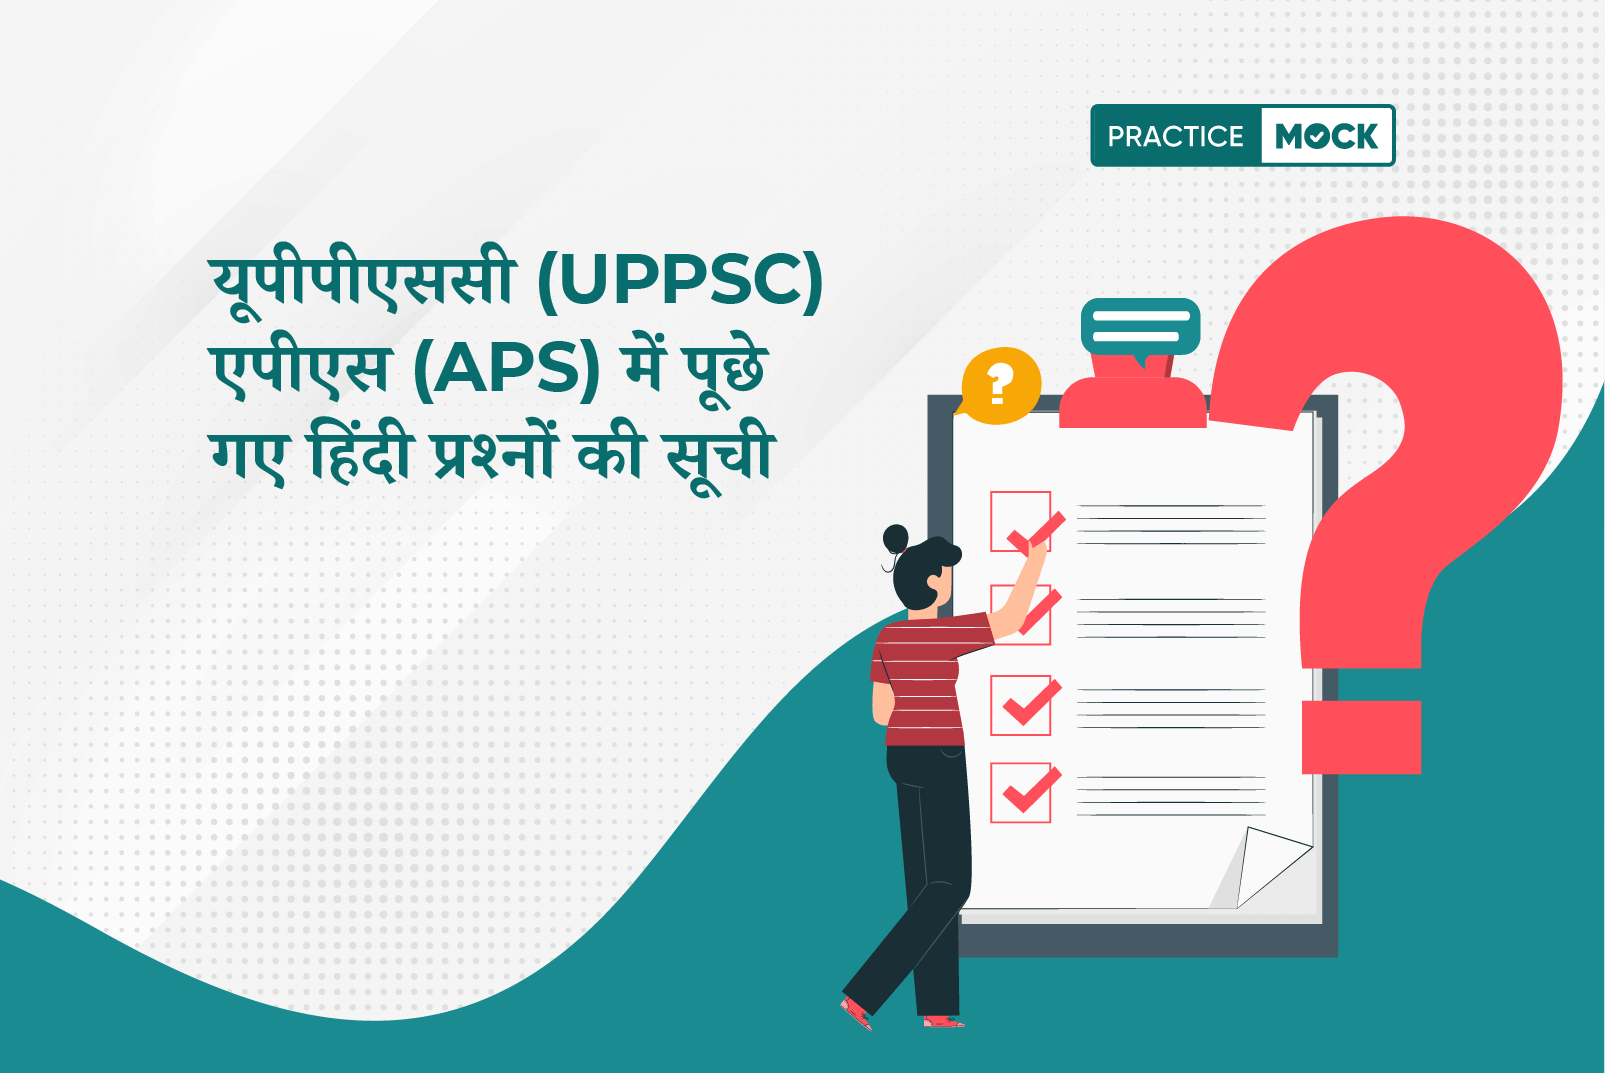 यूपीपीएससी (UPPSC) एपीएस (APS) में पूछे गए हिंदी प्रश्नों की सूची